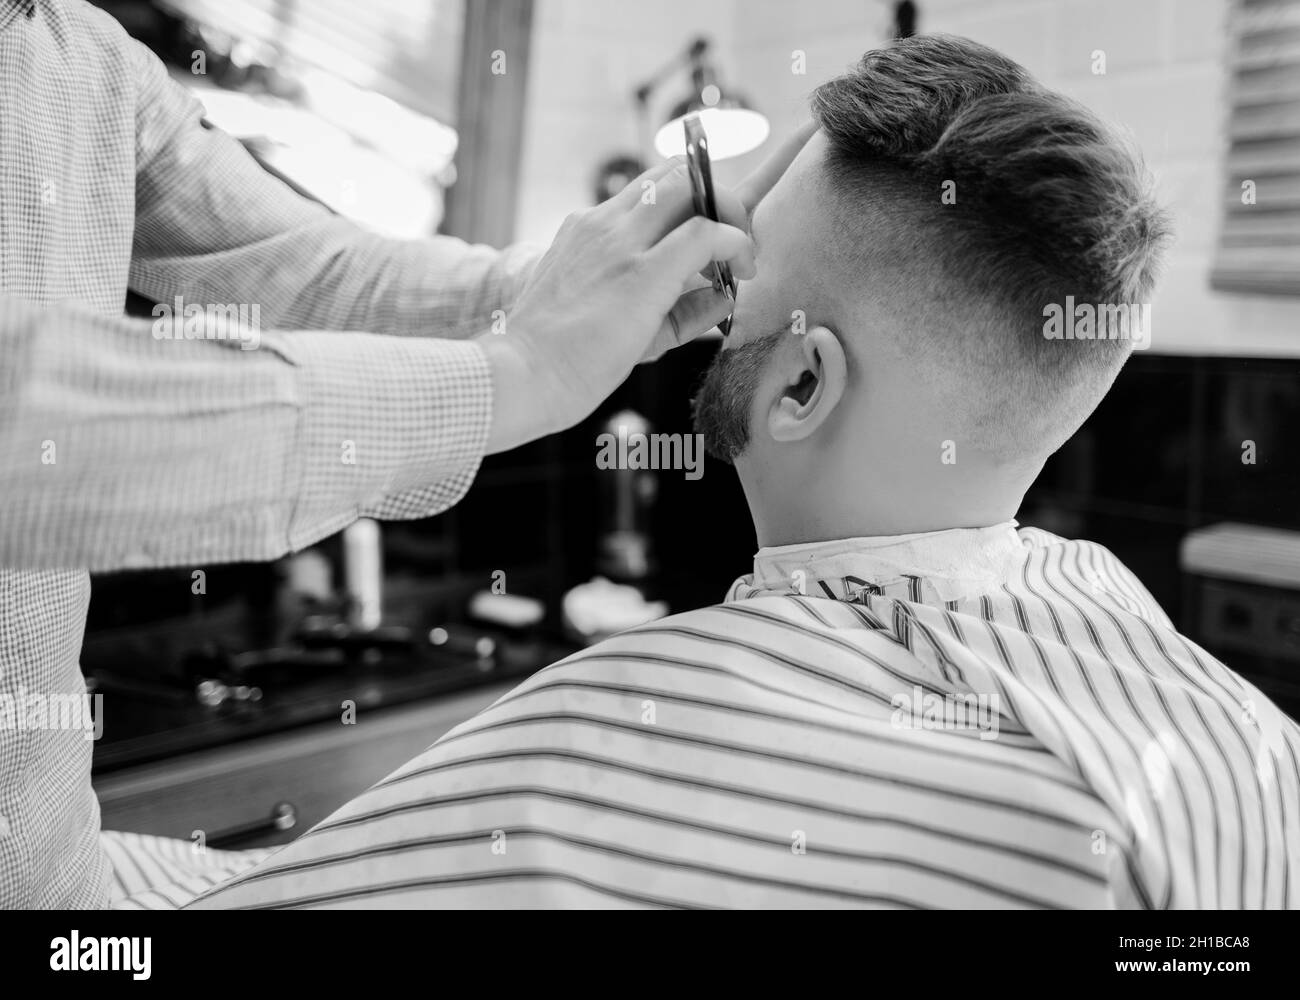 Barber arbeitet mit einem Rasiermesser mit einem Kunden. Ein bärtiger Mann rasiert in einem Friseursalon Stockfoto